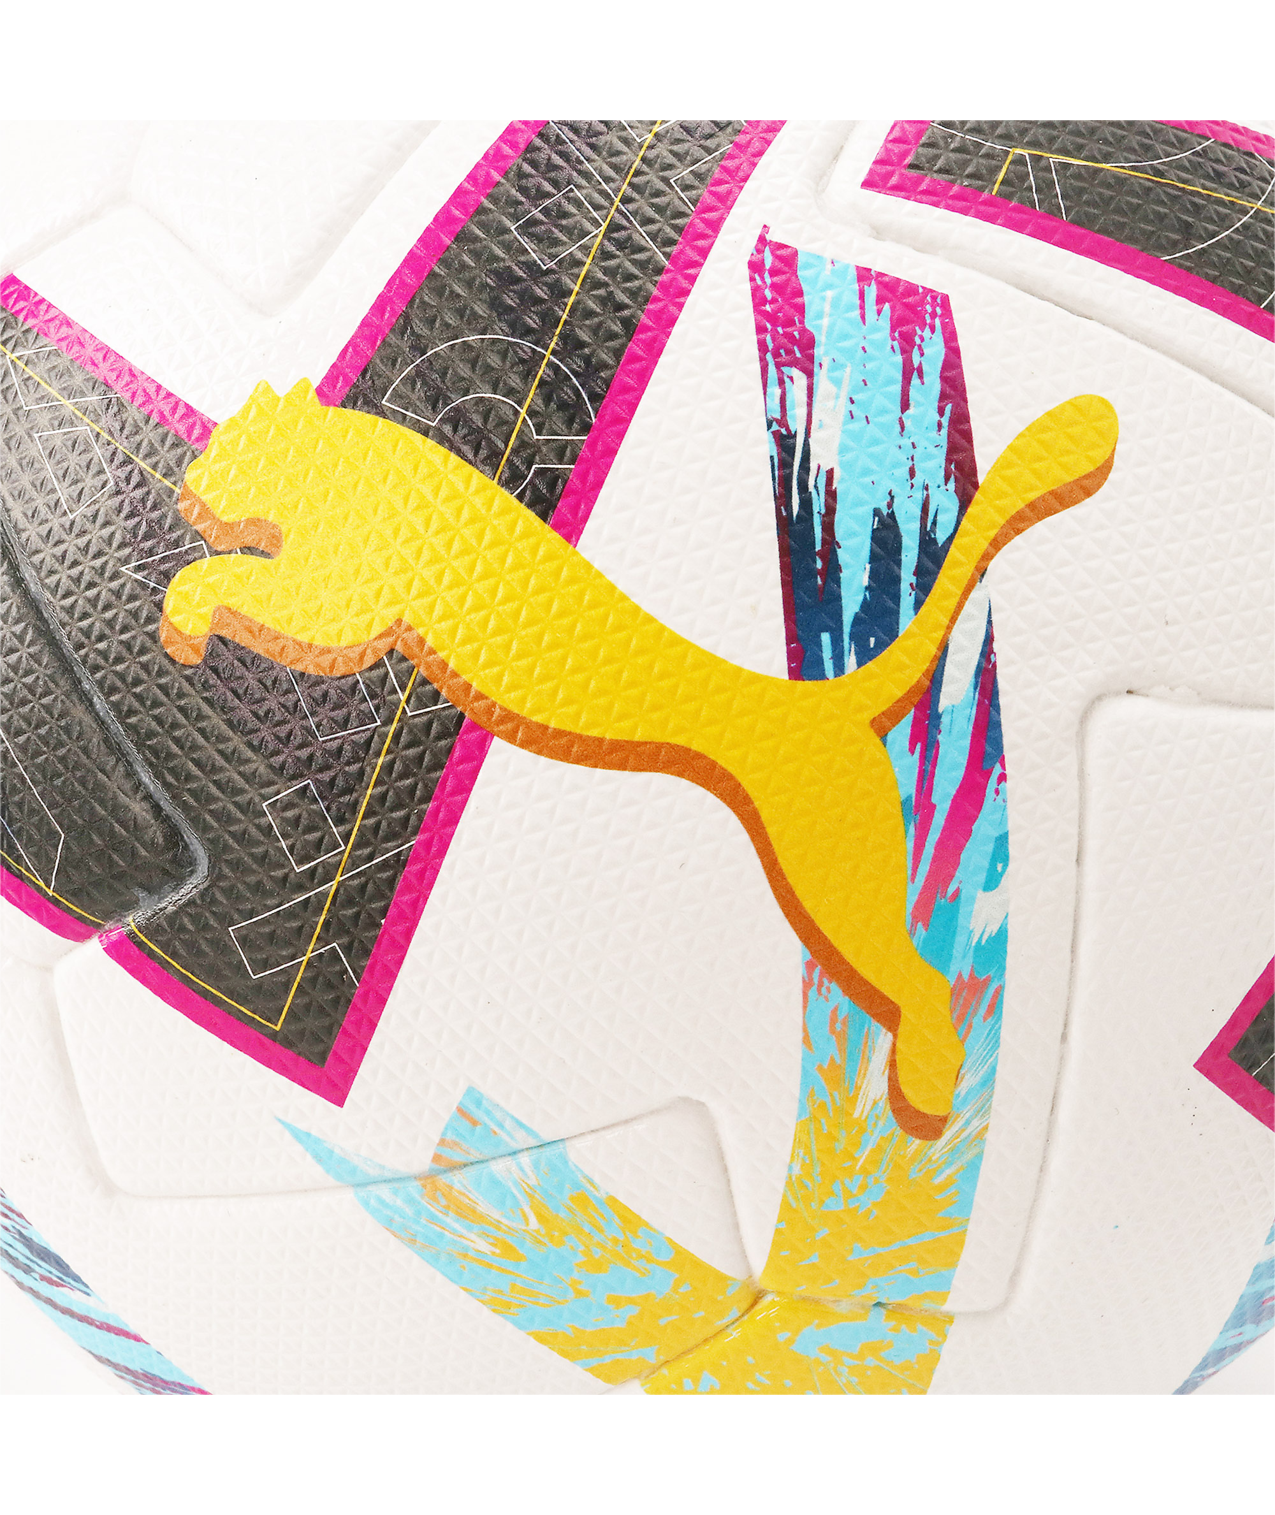 Balón Puma LaLiga 1 Orbita (FIFA Quality Pro) 2022-2023 Box Lemon